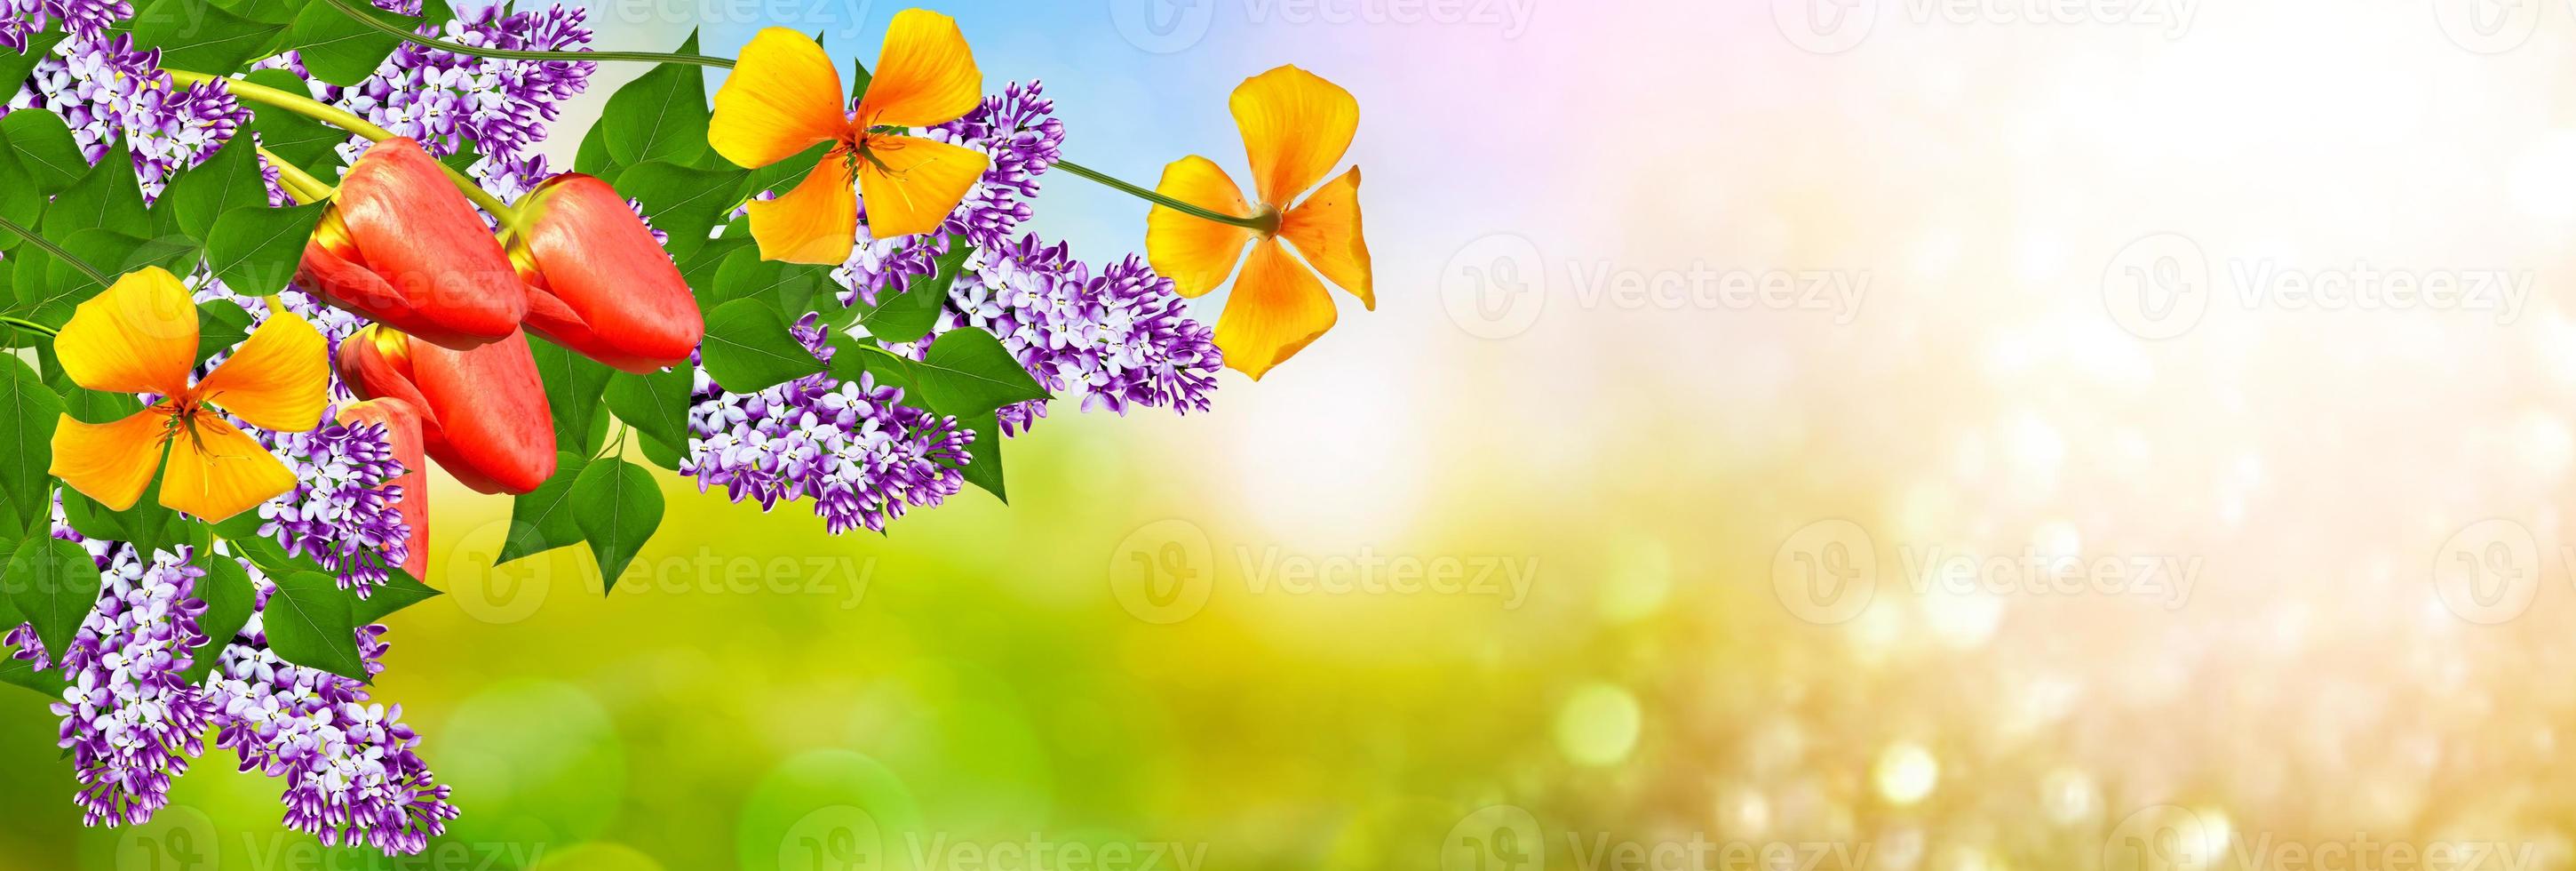 bouquets de fleurs de lilas photo